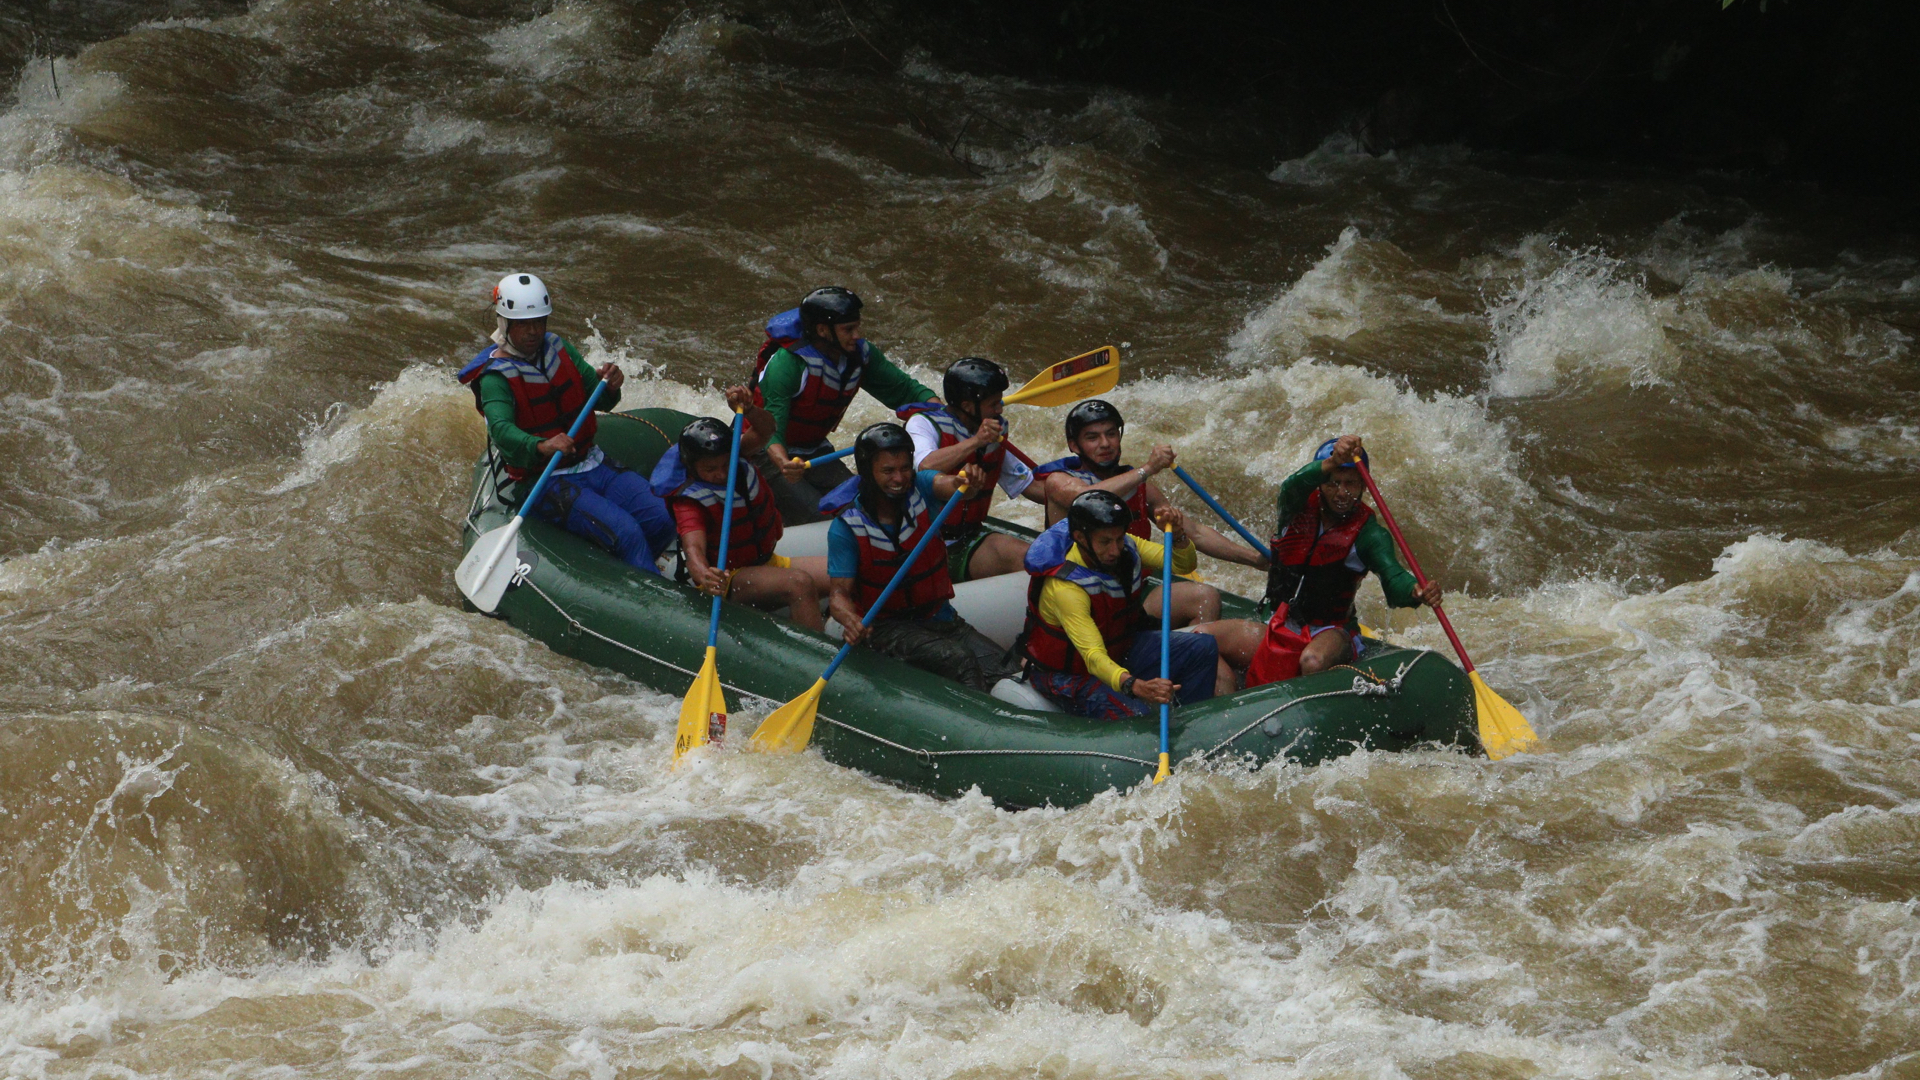 En el municipio se puede hacer rafting en dos sectores del río Pato: en Cajones, donde el río es más tranquilo y es nivel uno, y en Miravalle, donde las corrientes son fuertes y llegan al nivel cinco. / FOTO: Caguán Expeditions